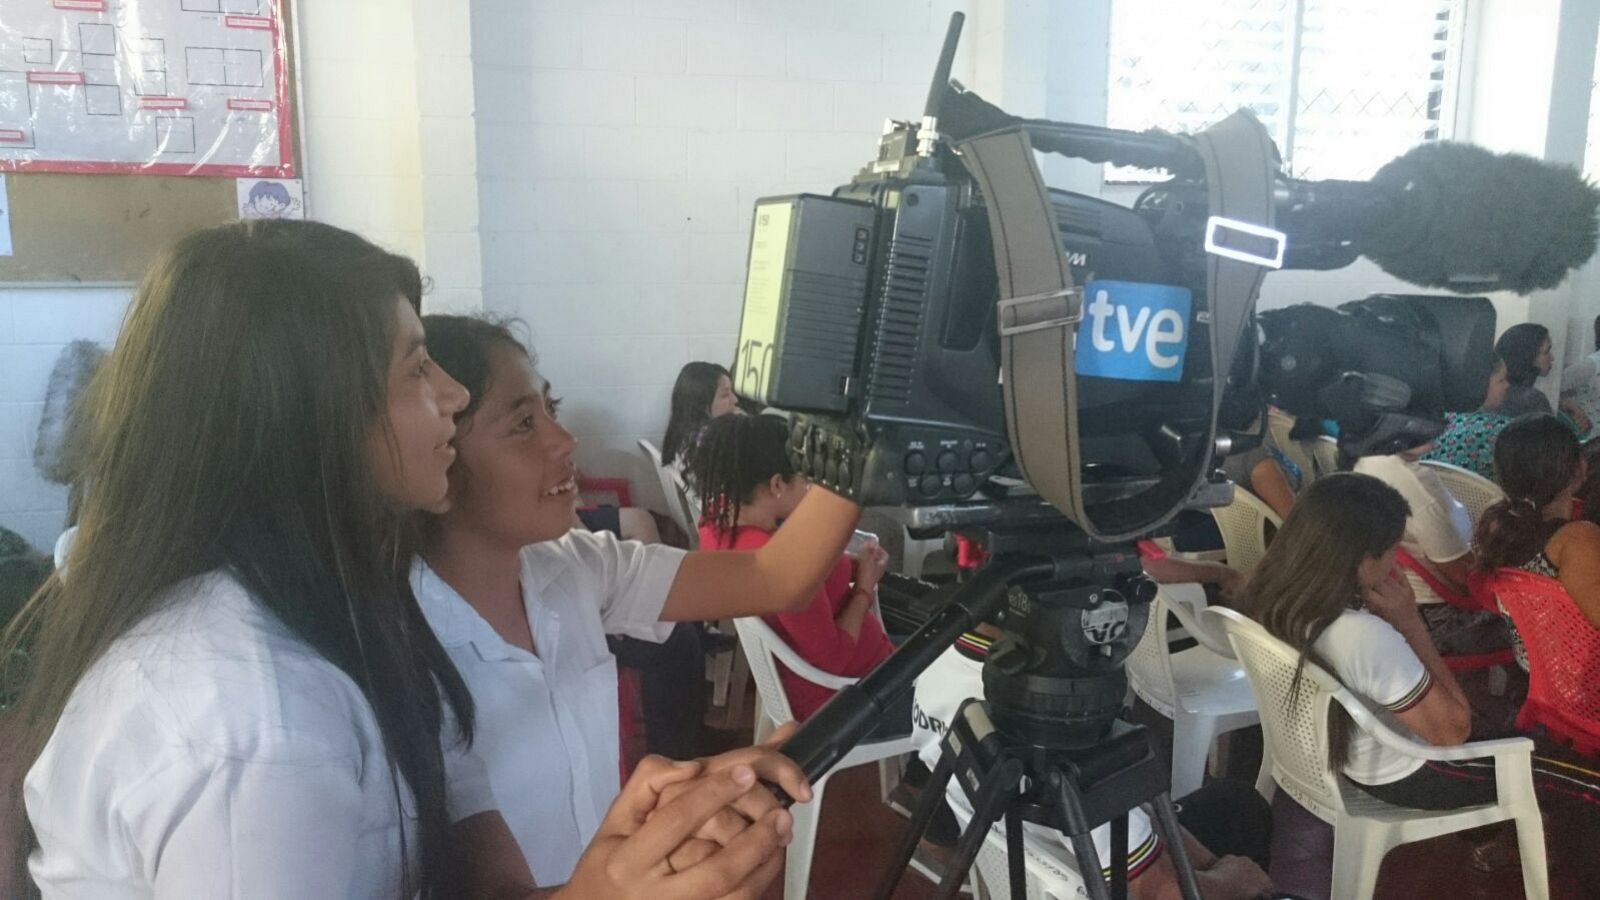 En total son 40 las escuelas públicas del Salvador que reciben apoyo y asesoramiento gratuito a través de este proyecto que pusieron en marcha los maristas hace cuatro años.